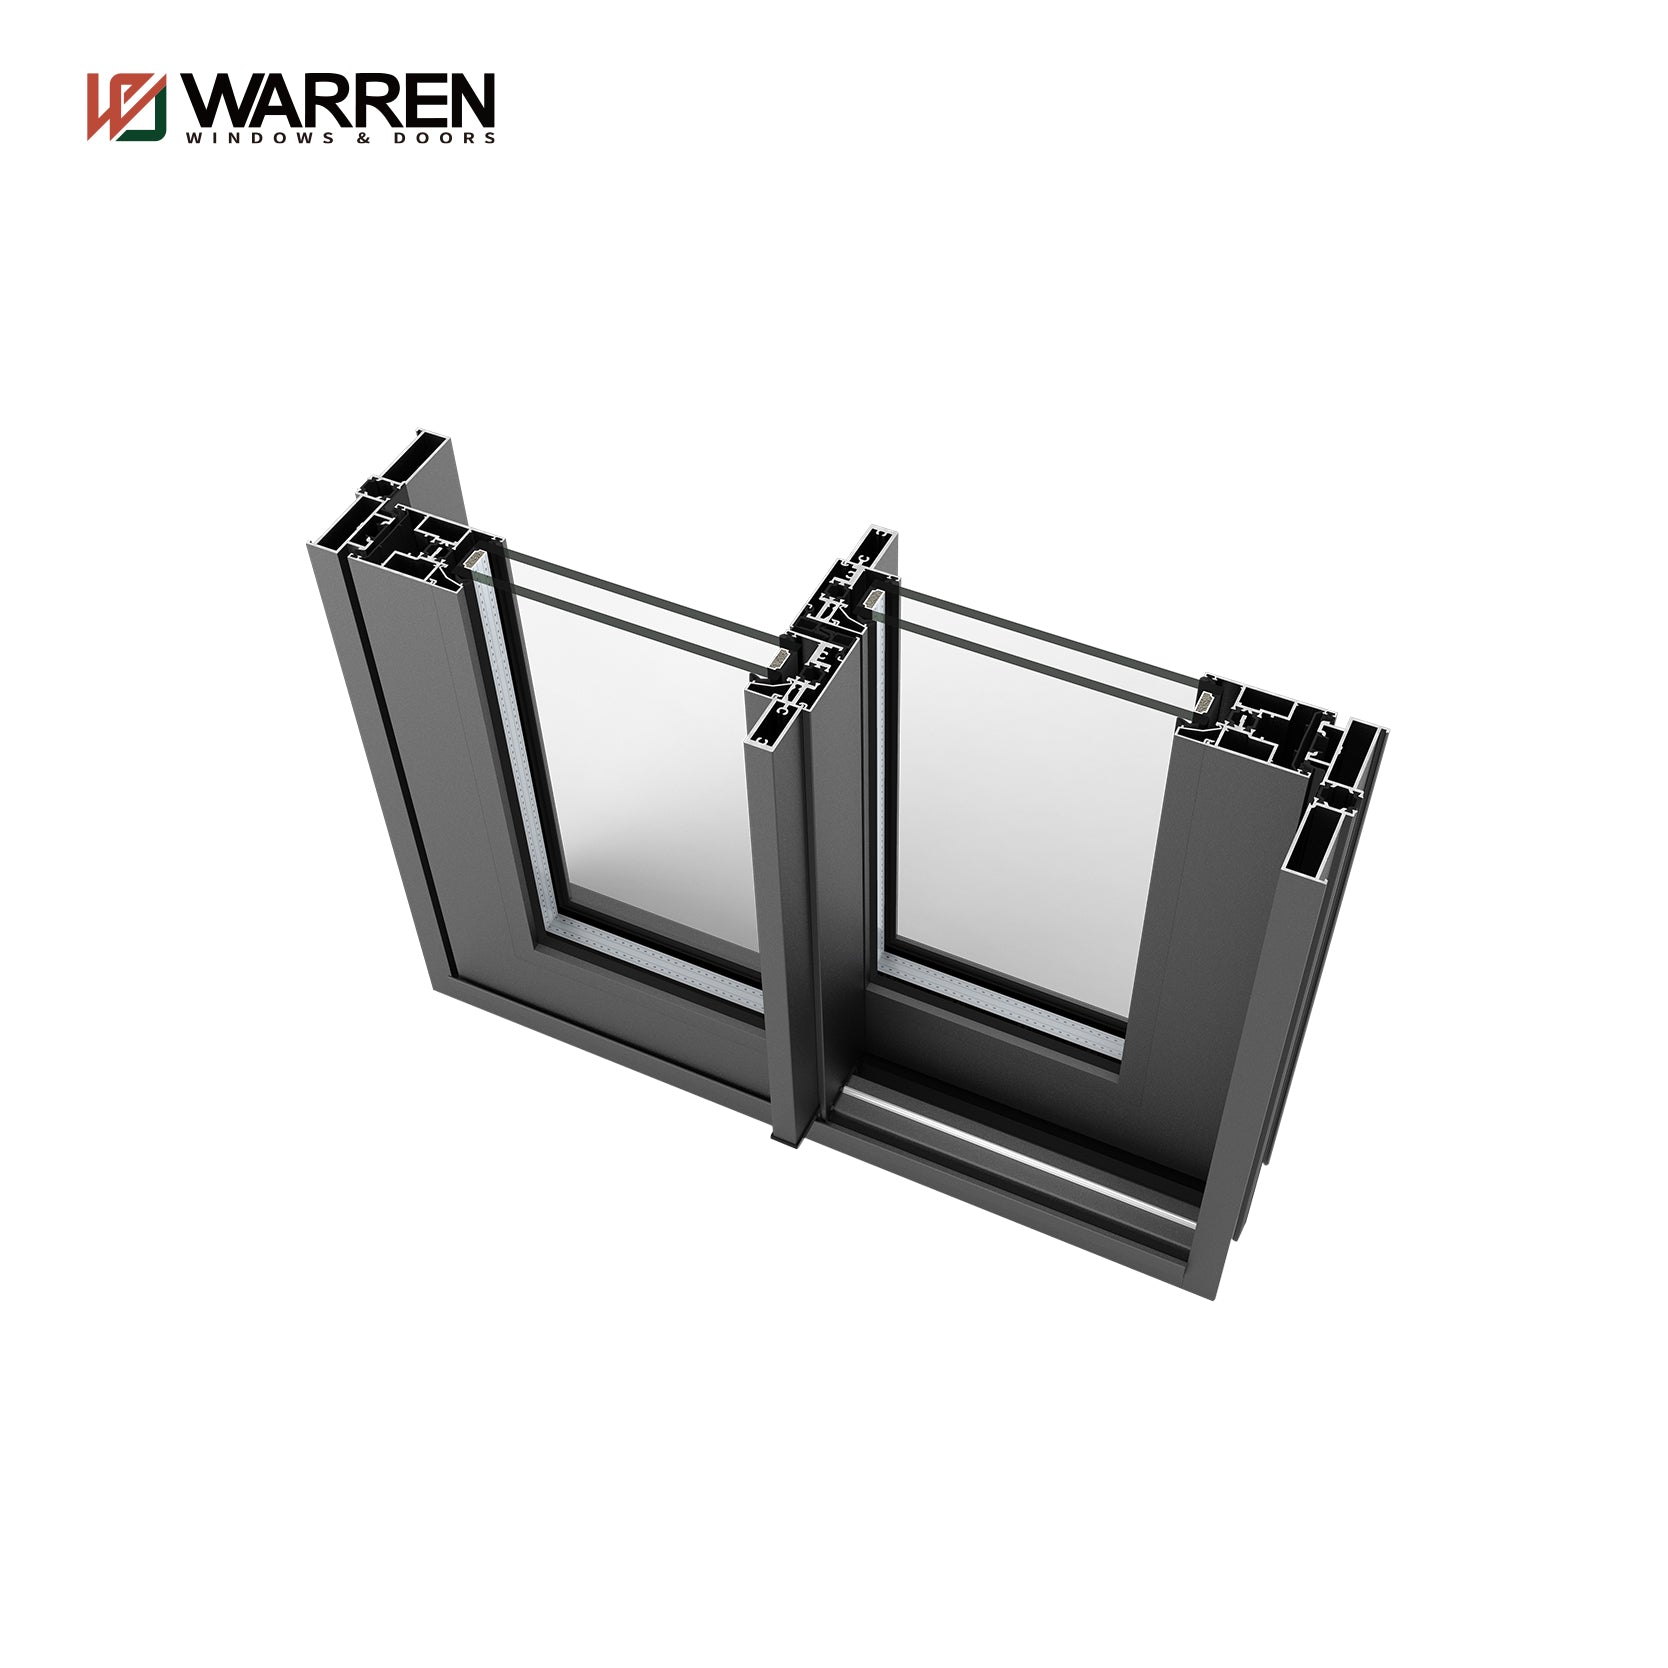 Warren Factory Supply Hot Sale Impact Glass Slider Door Double Glass Door Aluminum Lift And Sliding Door